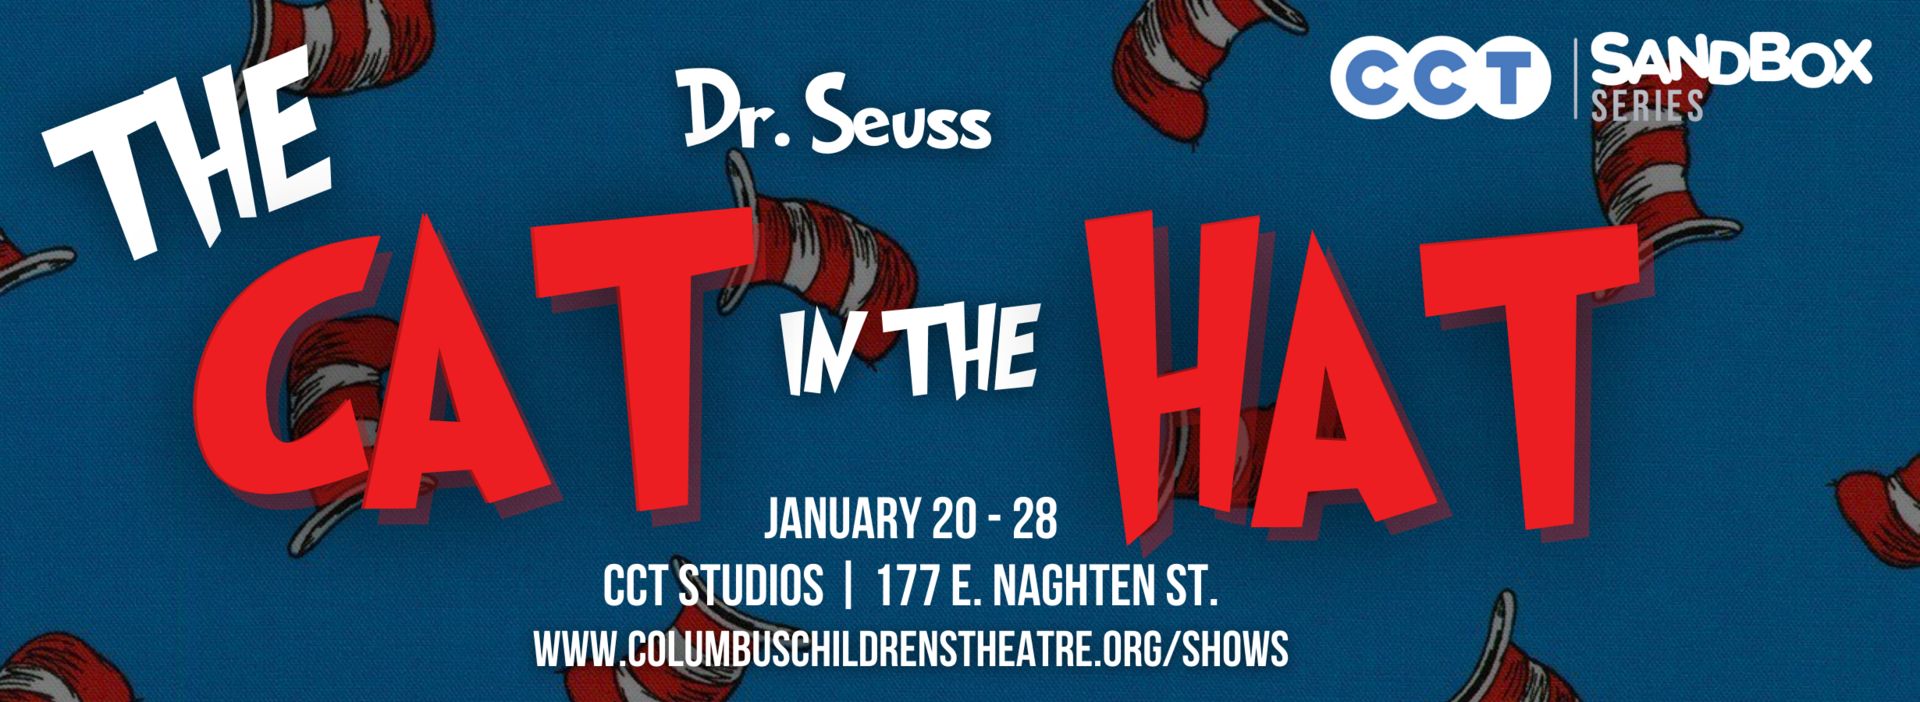 Dr. Seuss' Cat in the Hat, Columbus, Ohio, United States